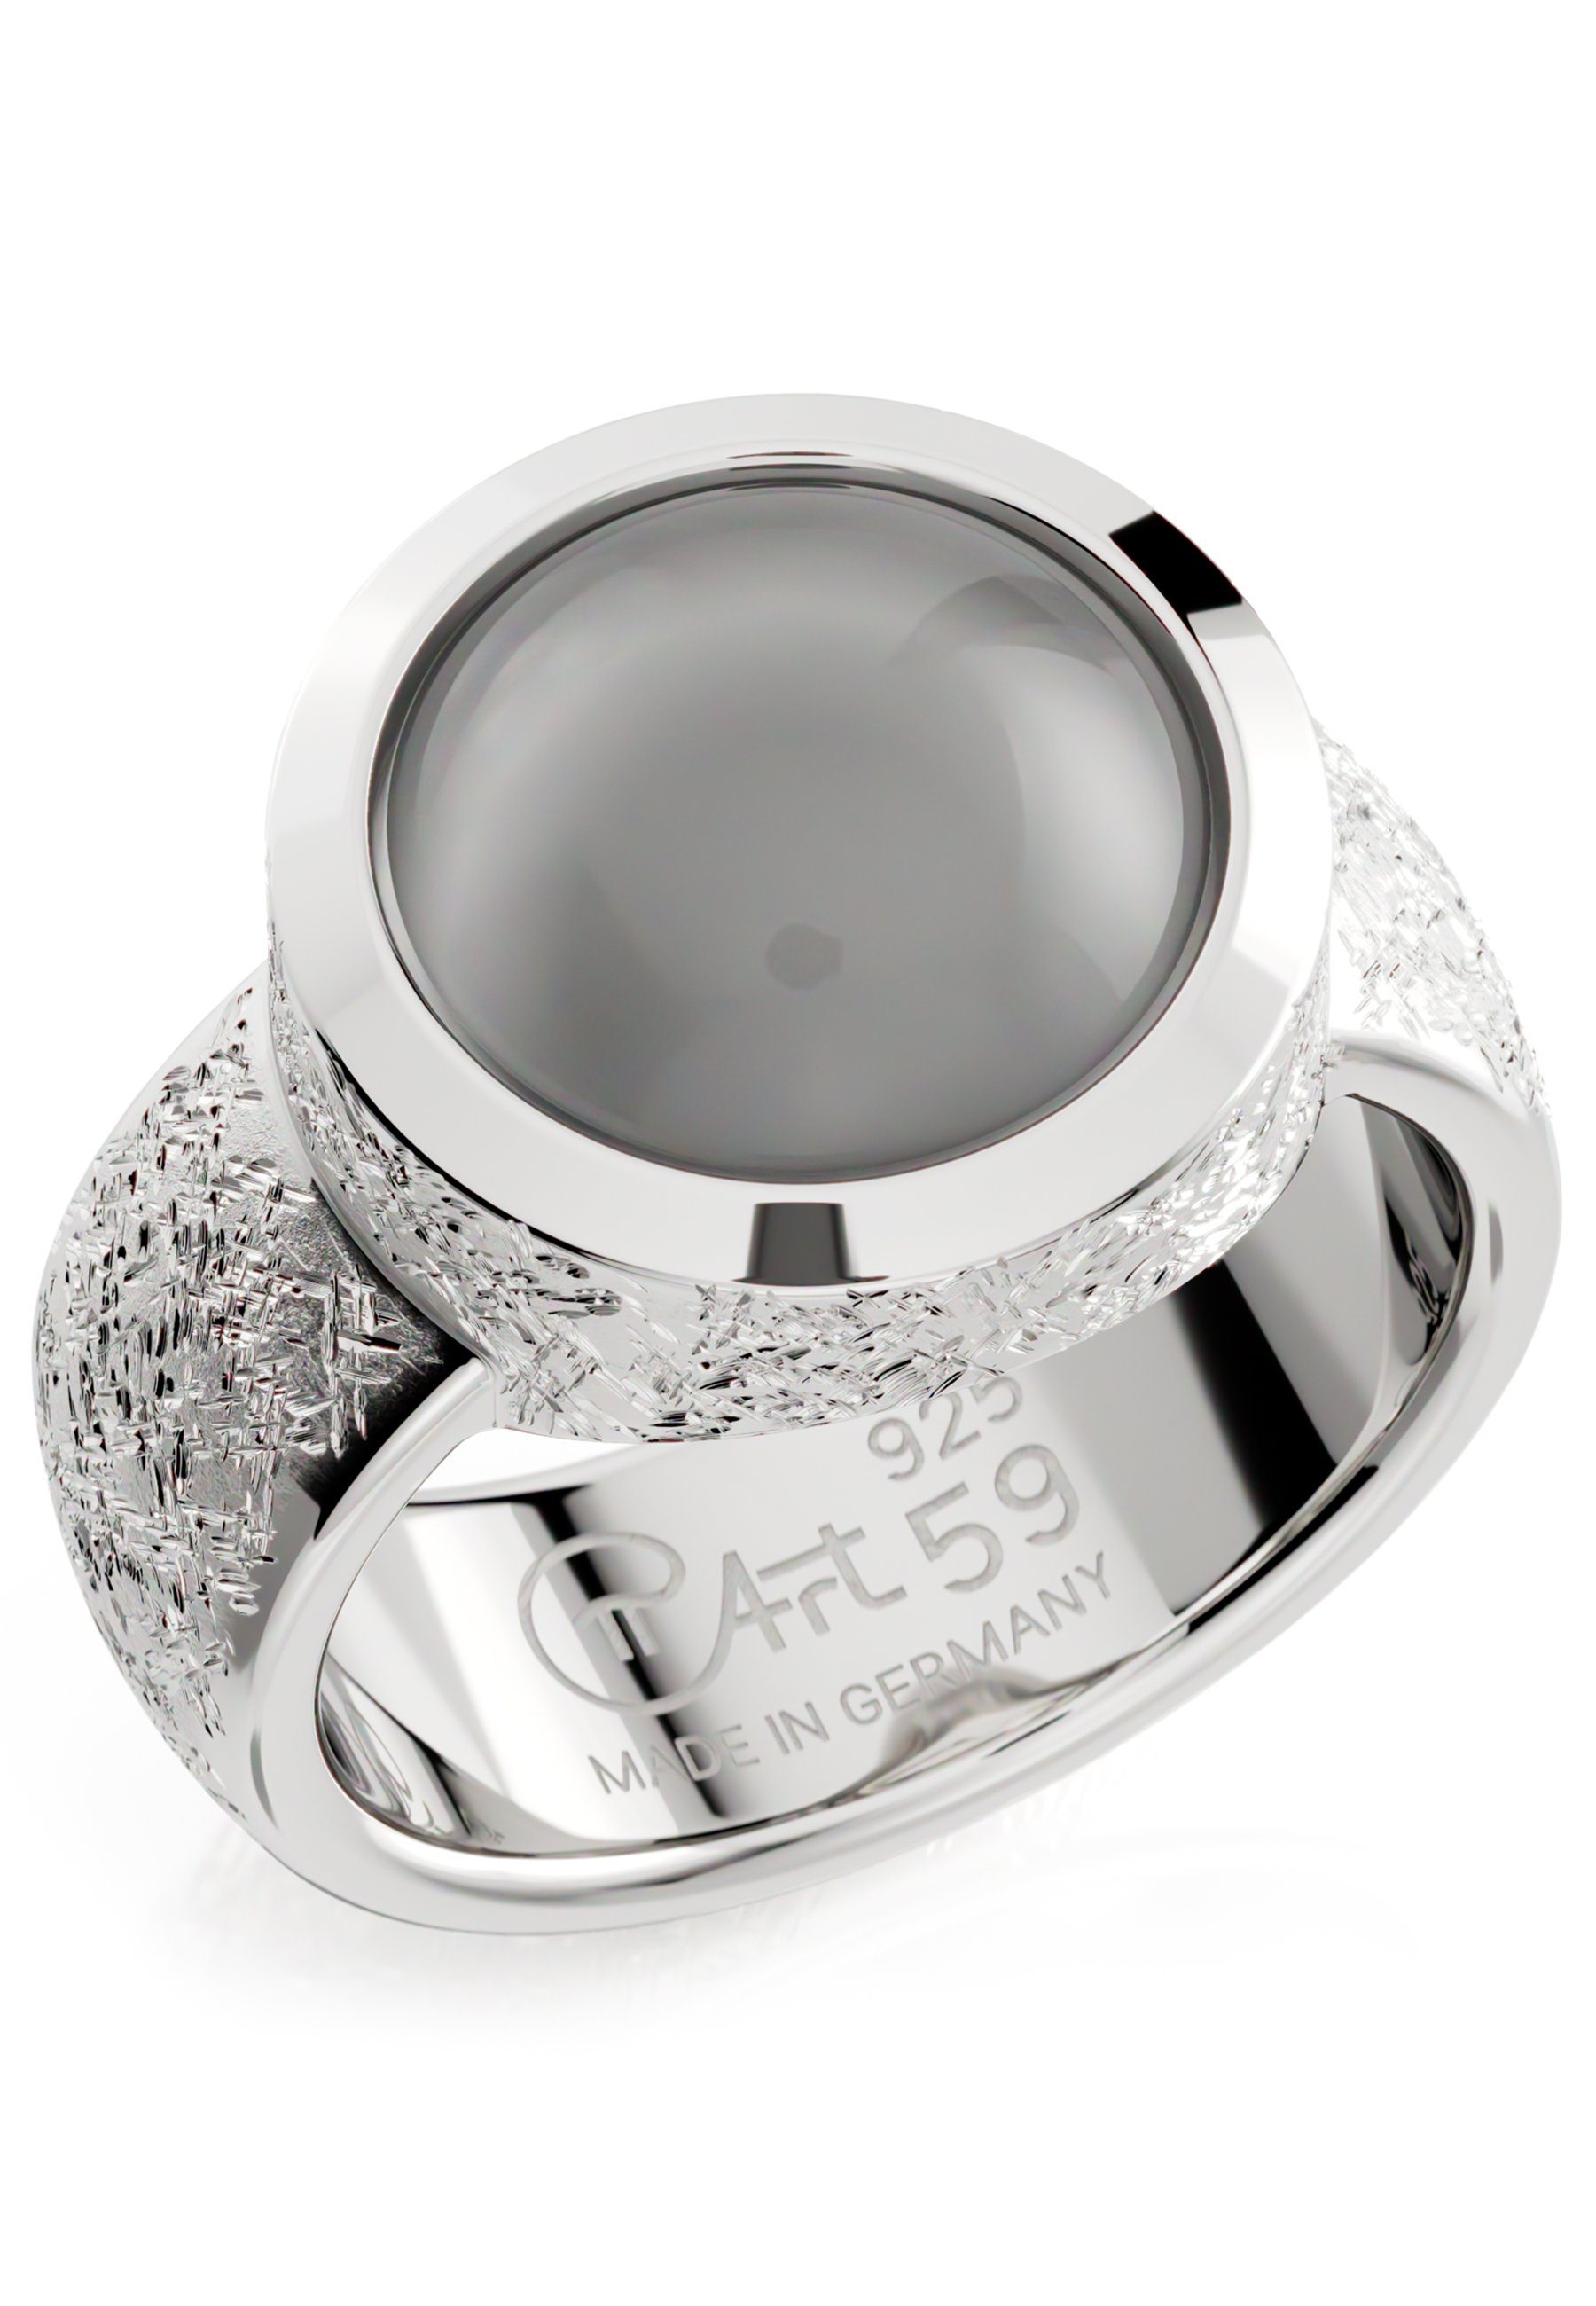 PiArt Silberring Echter grauer Edelstein - - MONDSTEIN 5,5ct Sterling 925 Silber